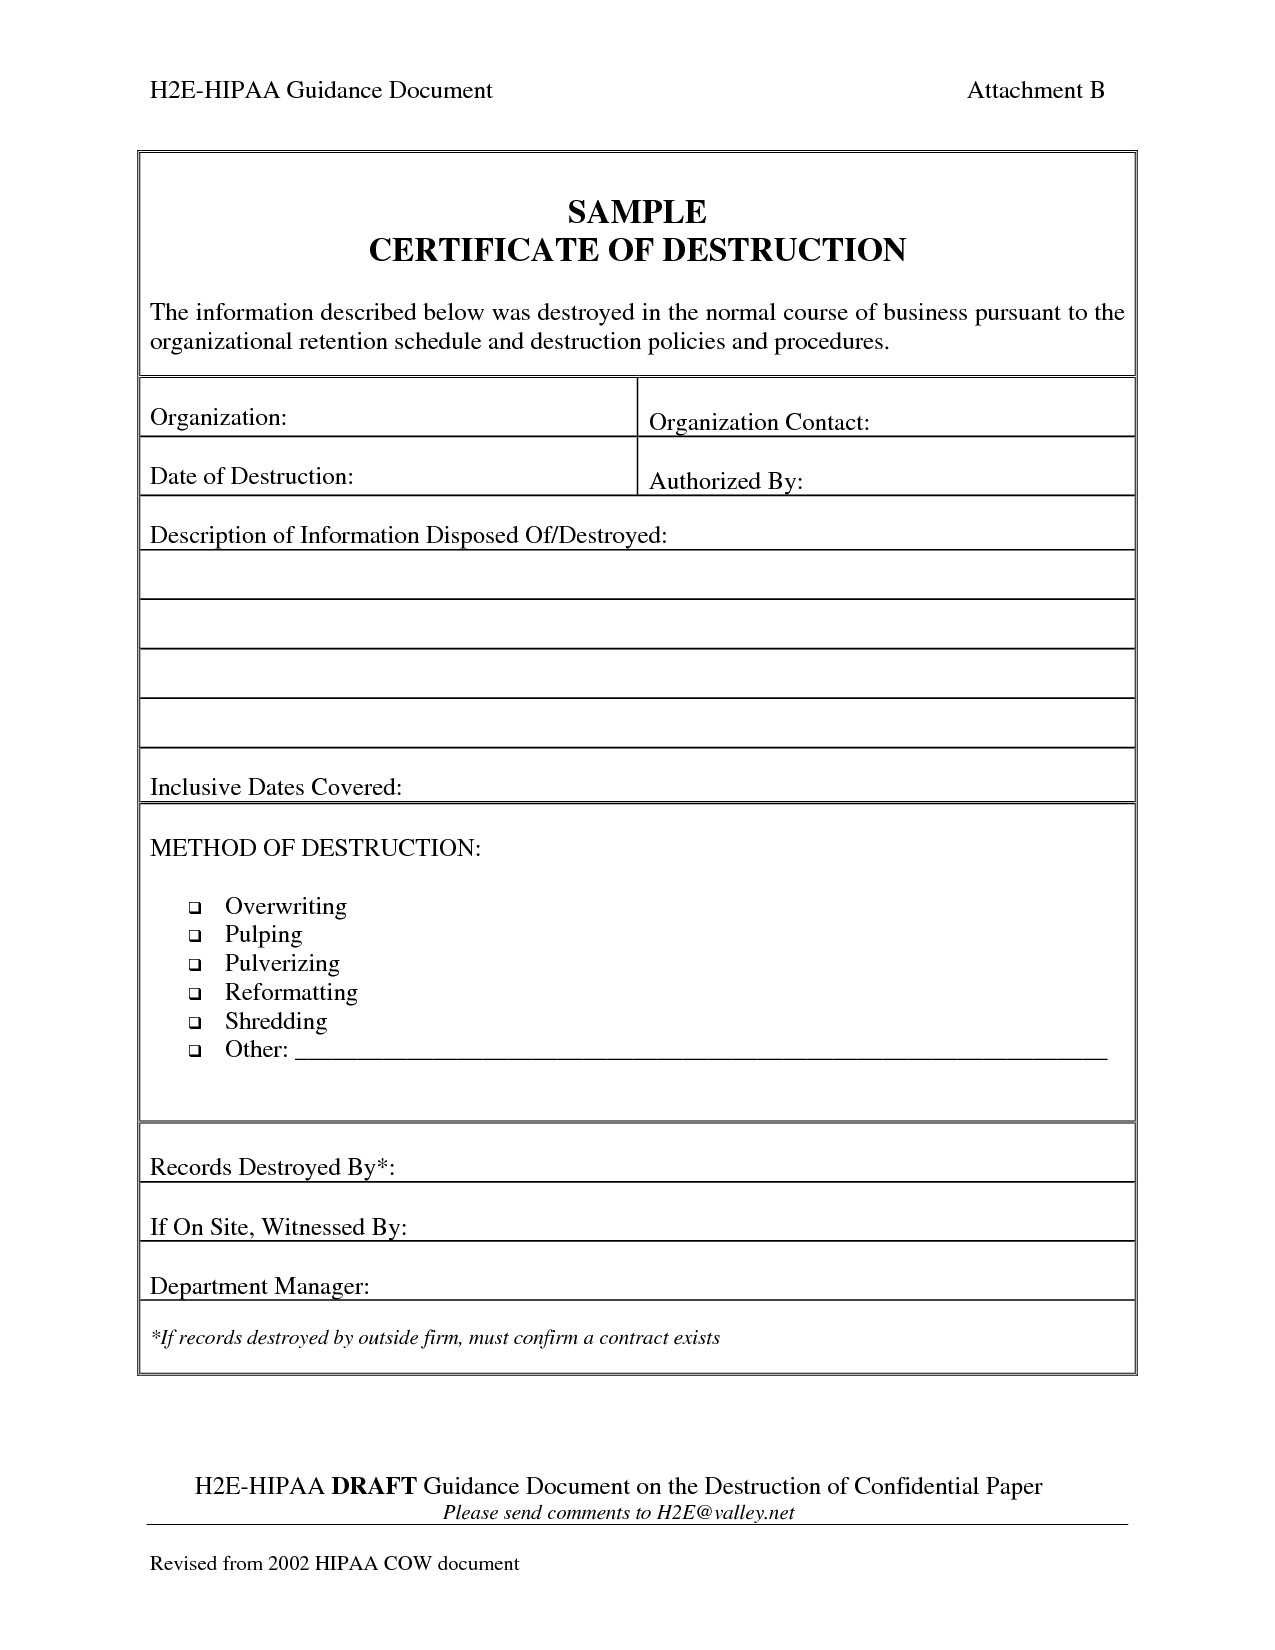 Template Ideas Certificate Of Destruction Frightening Product within Certificate Of Destruction Template